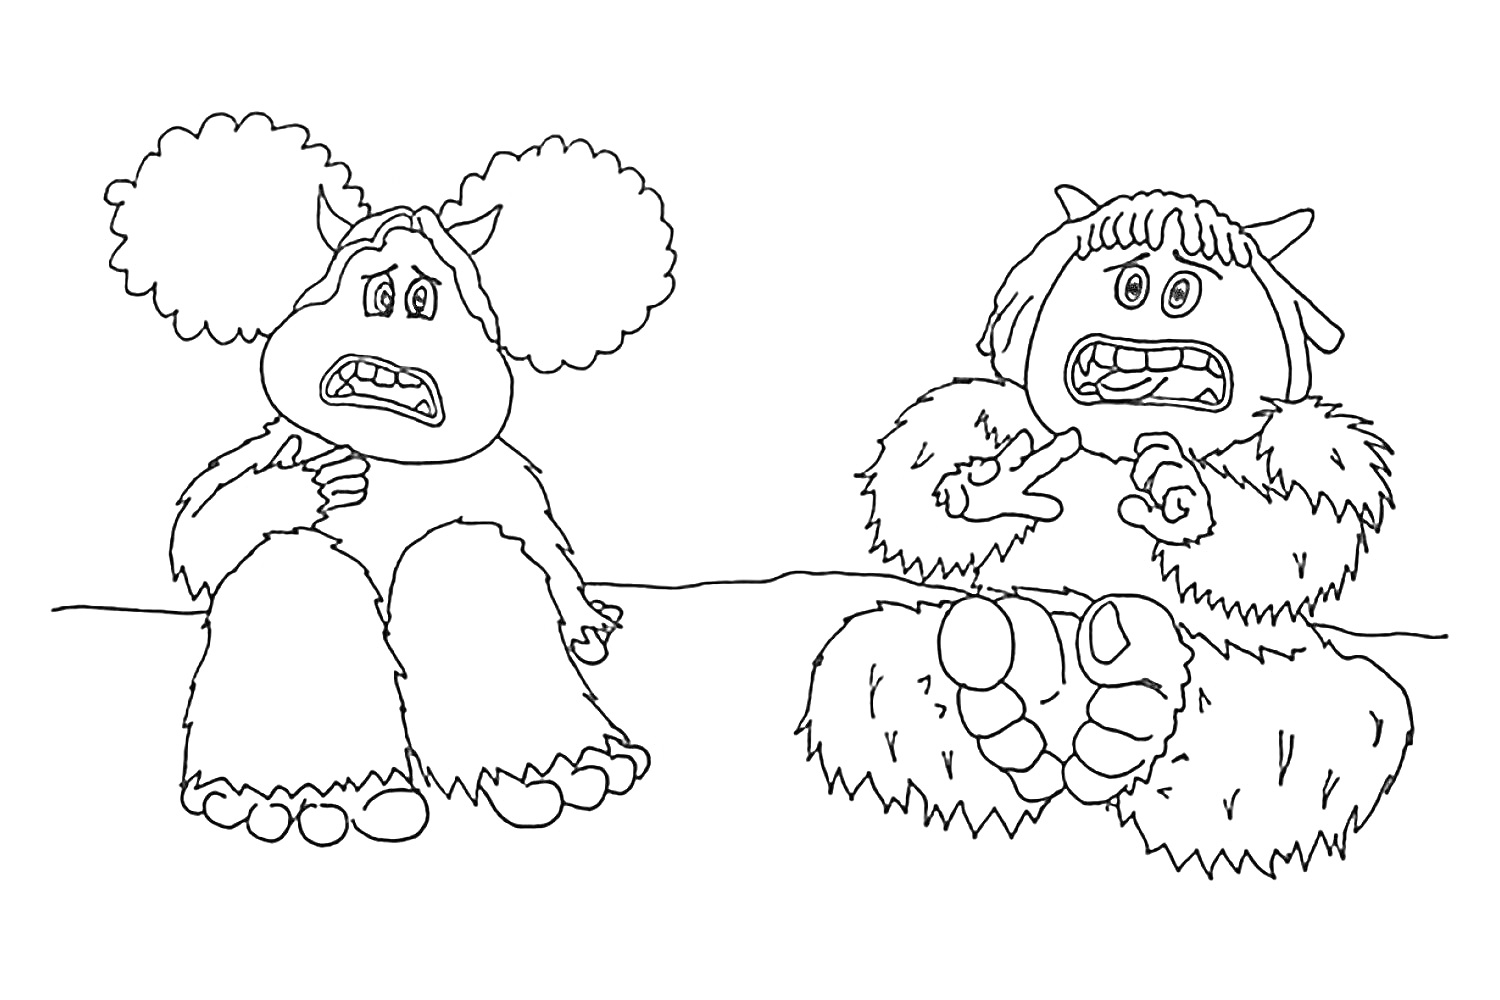 Раскраска Два смолфута с испуганными выражениями лиц в меховых костюмах